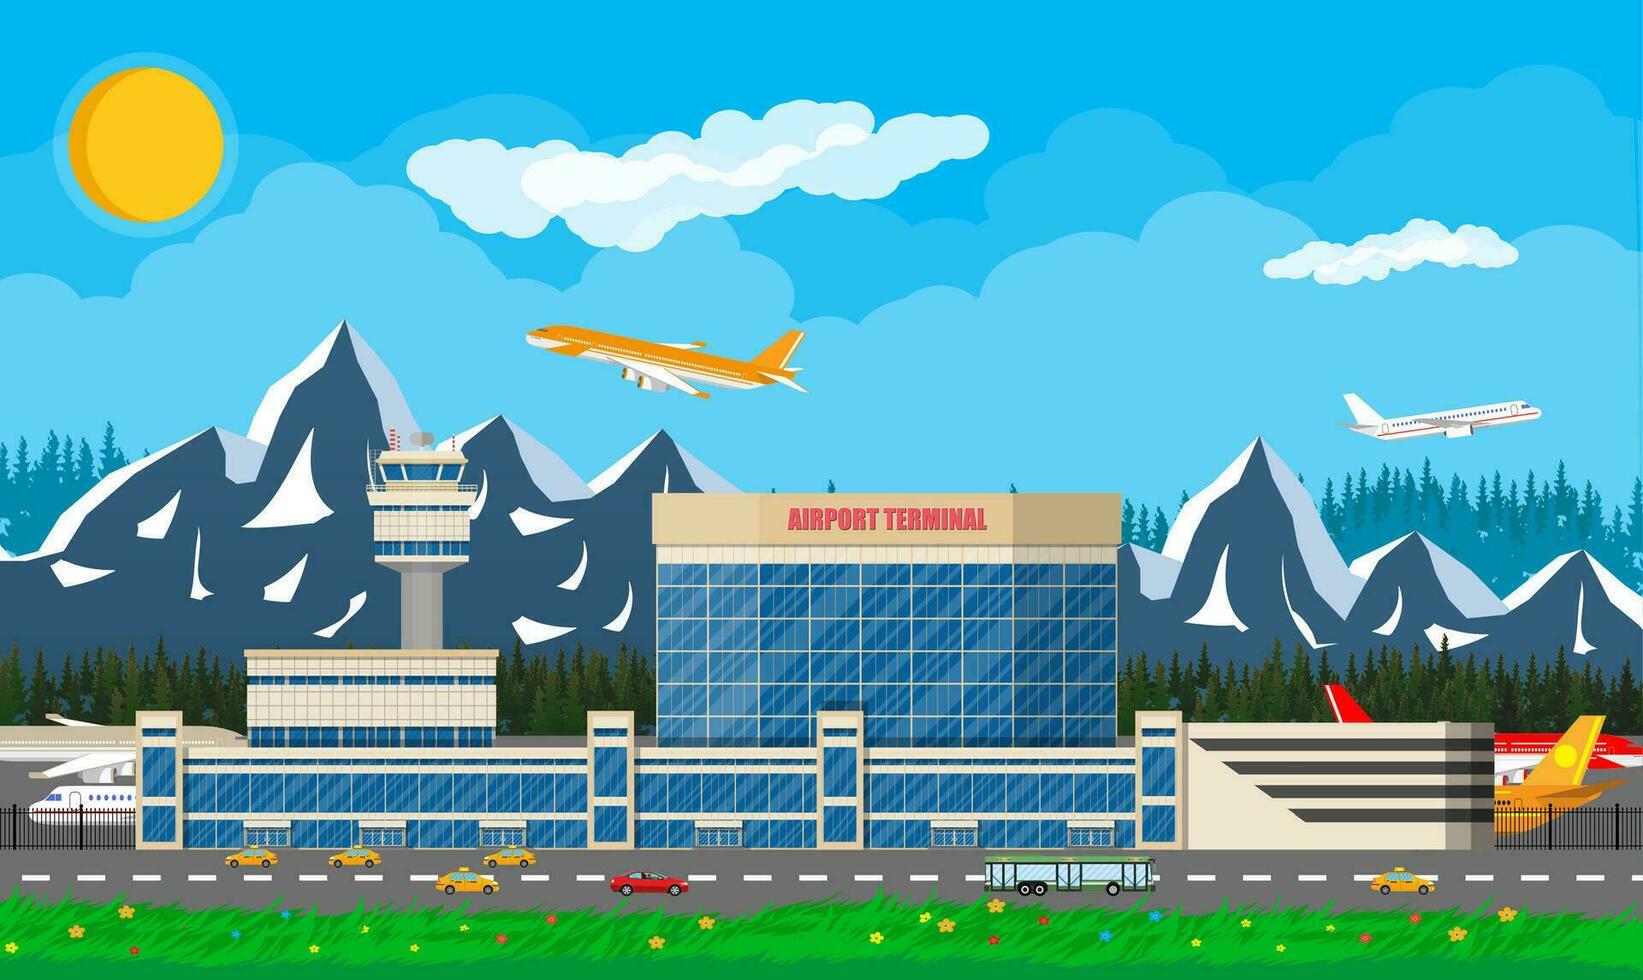 internationell flygplats i bergen begrepp. himmel med moln och Sol. flygplats terminal med väg, taxi cab, buss och flygplan. vektor illustration i platt stil